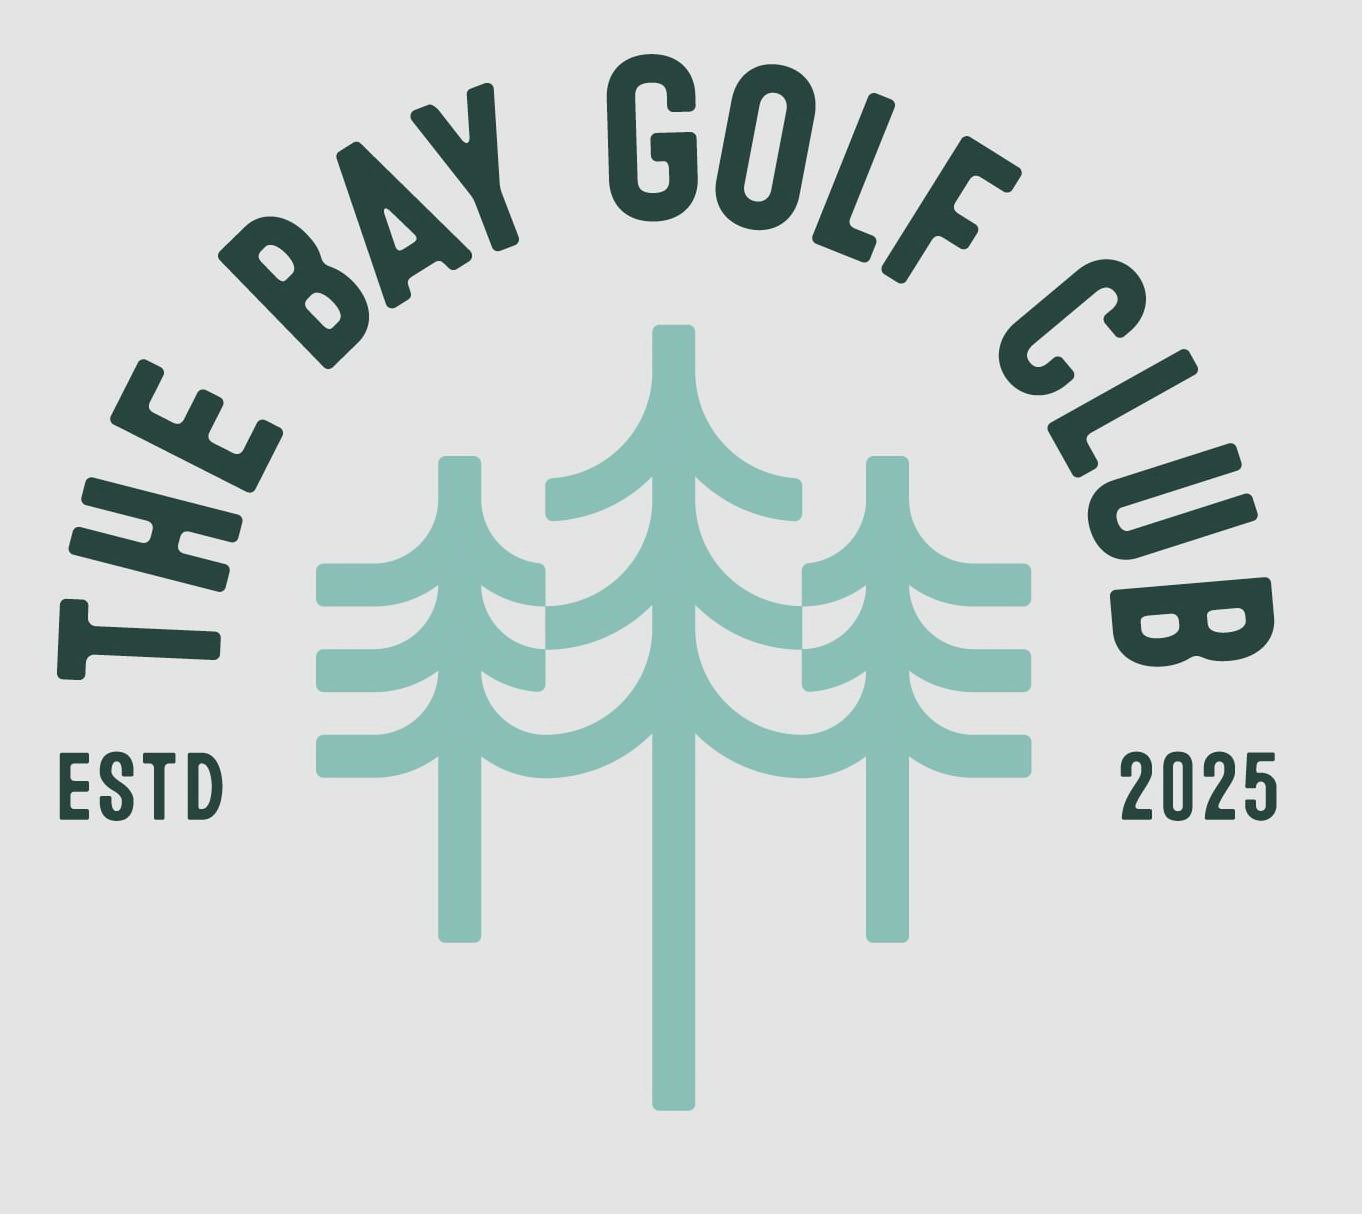  THE BAY GOLF CLUB ESTD 2025